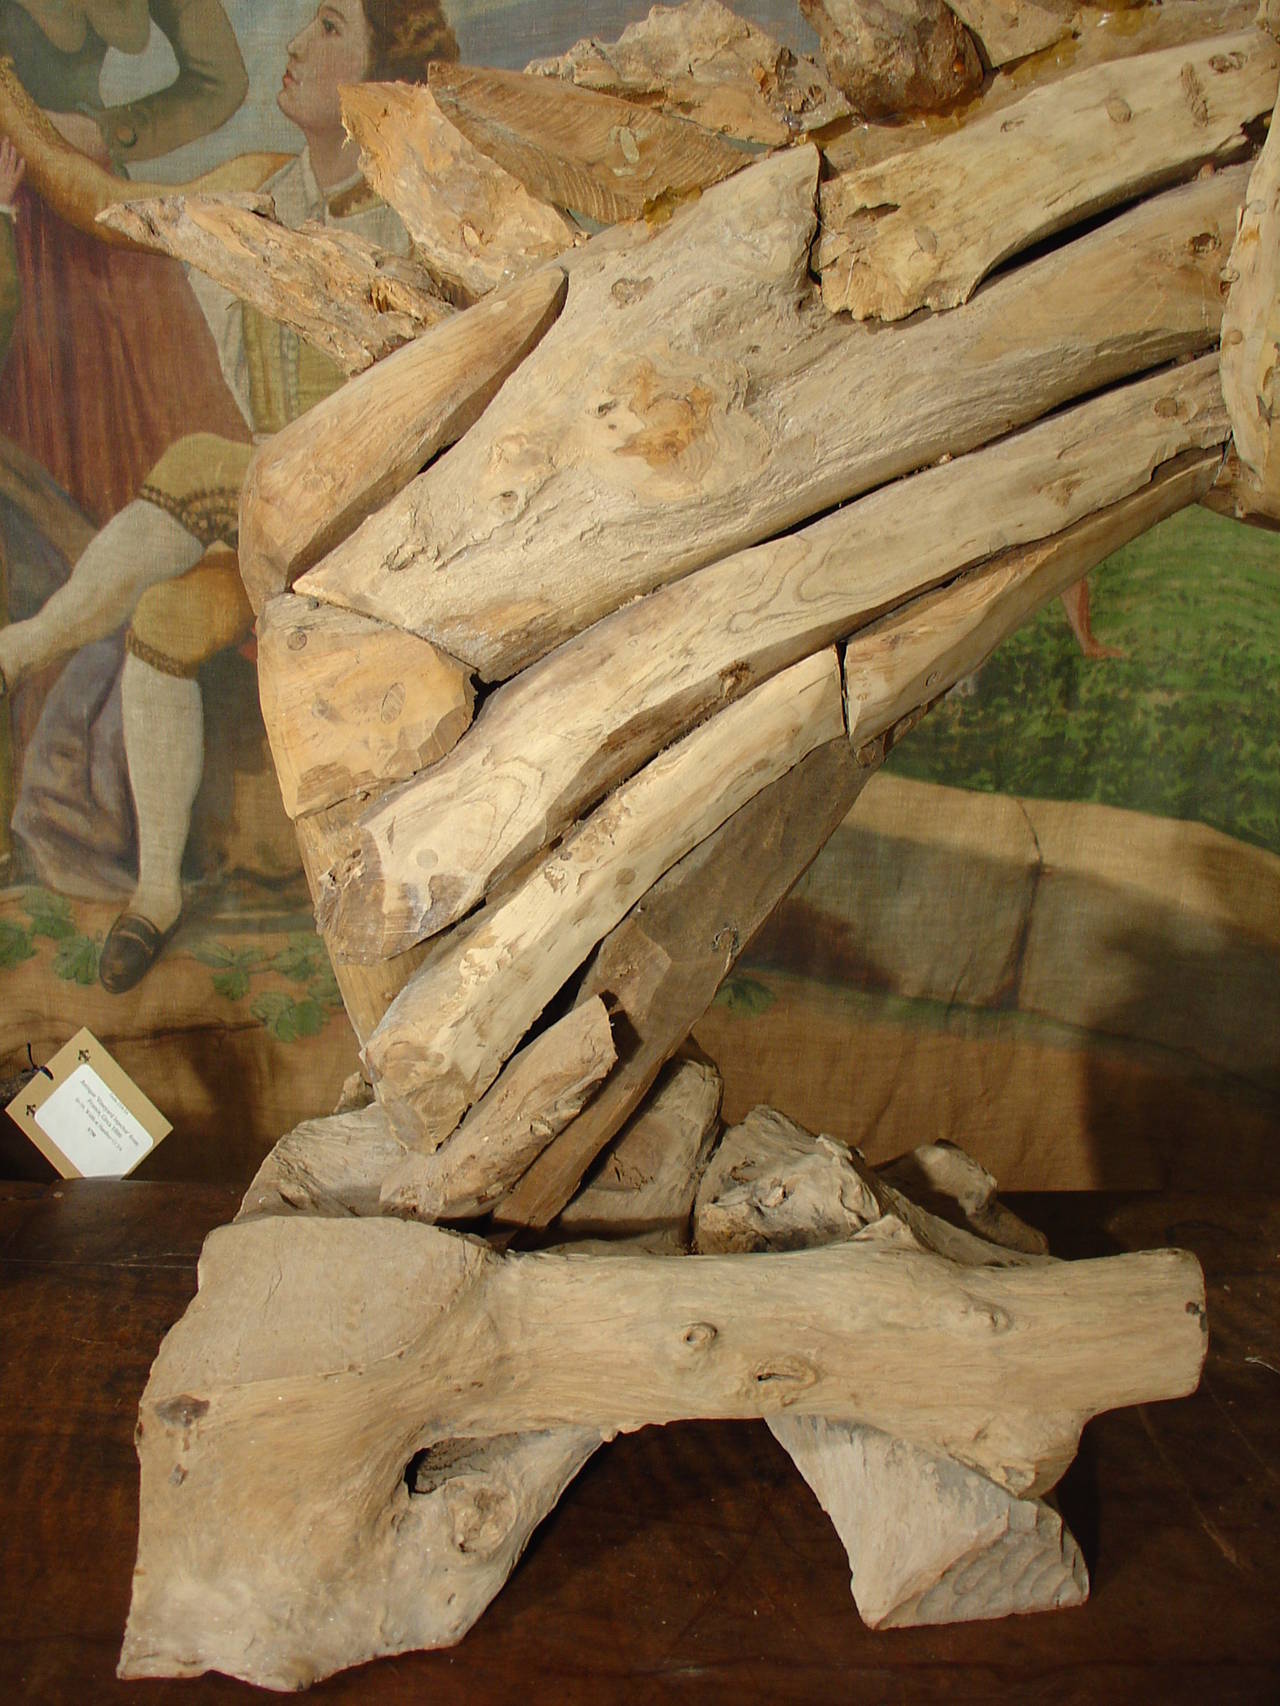 Aus Frankreich kommt diese absolut atemberaubende Skulptur aus Treibholz, ein Pferd in einem Zustand großer Emotionen.  Das Pferd hat das Maul weit aufgerissen, die Oberlippe leicht gekräuselt, die Mähne fliegt in der Luft und die Nüstern sind